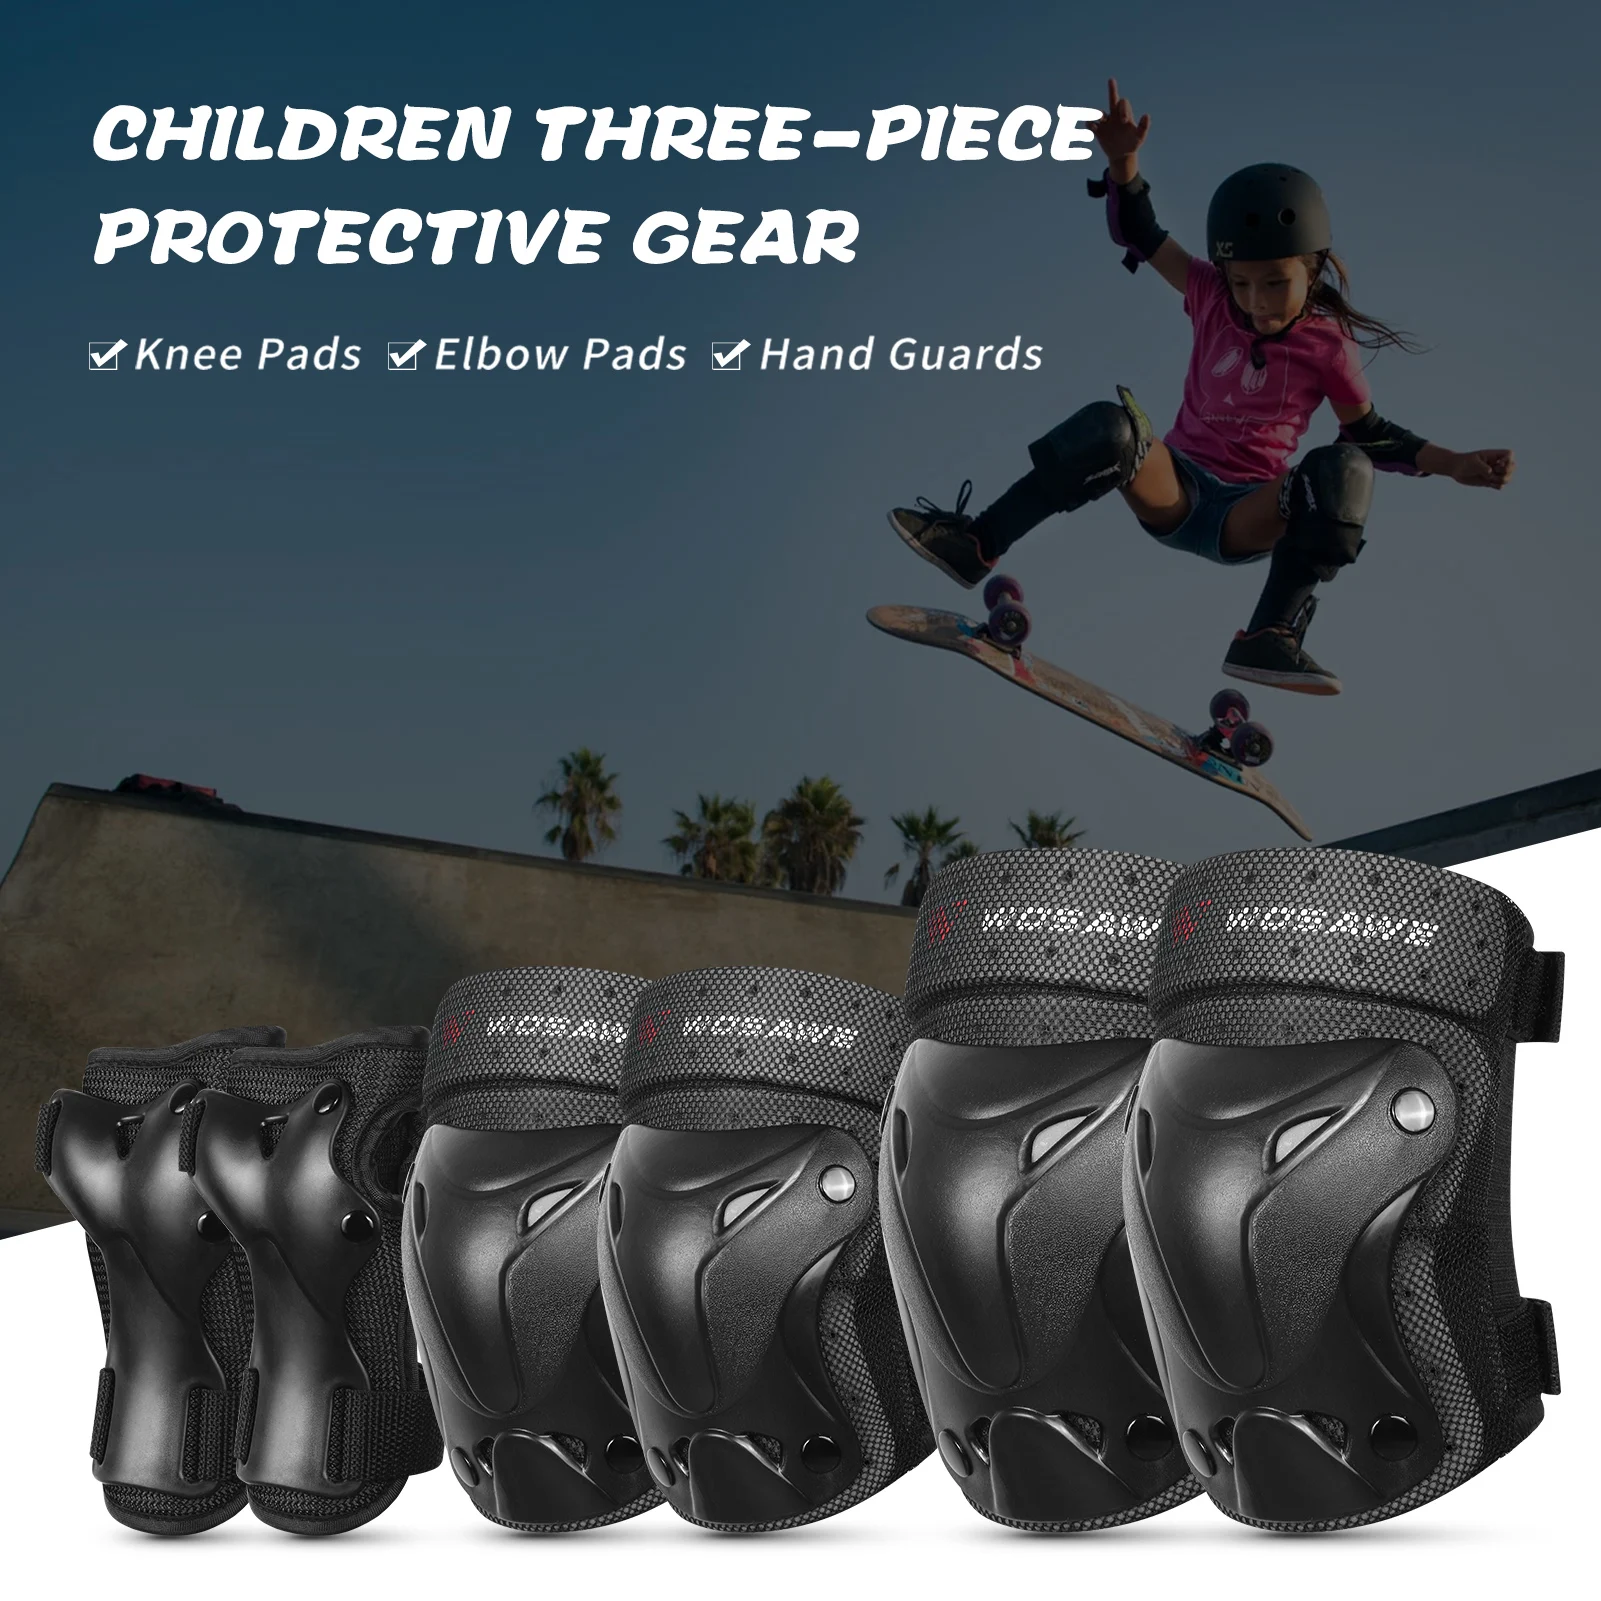 

Защита для колена 2021, наколенники, налокотники, защита для запястья, комплект защитного снаряжения для детей, для спорта, езды на велосипеде,...